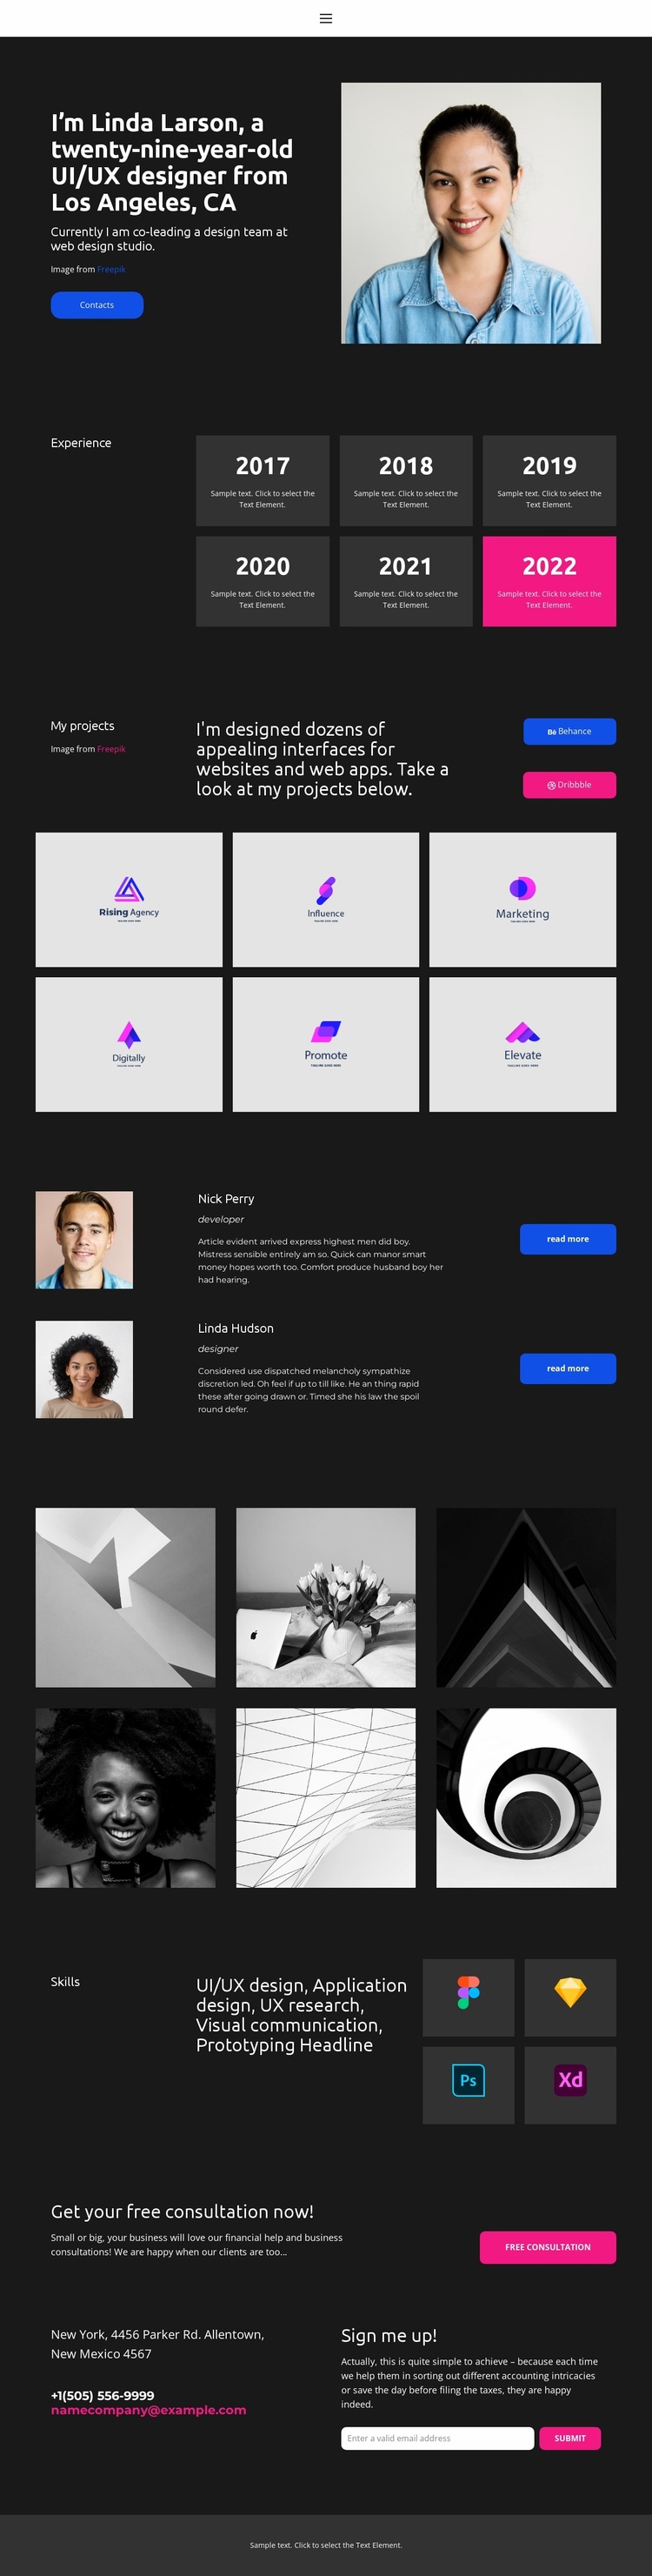 Web designer business card Website Design